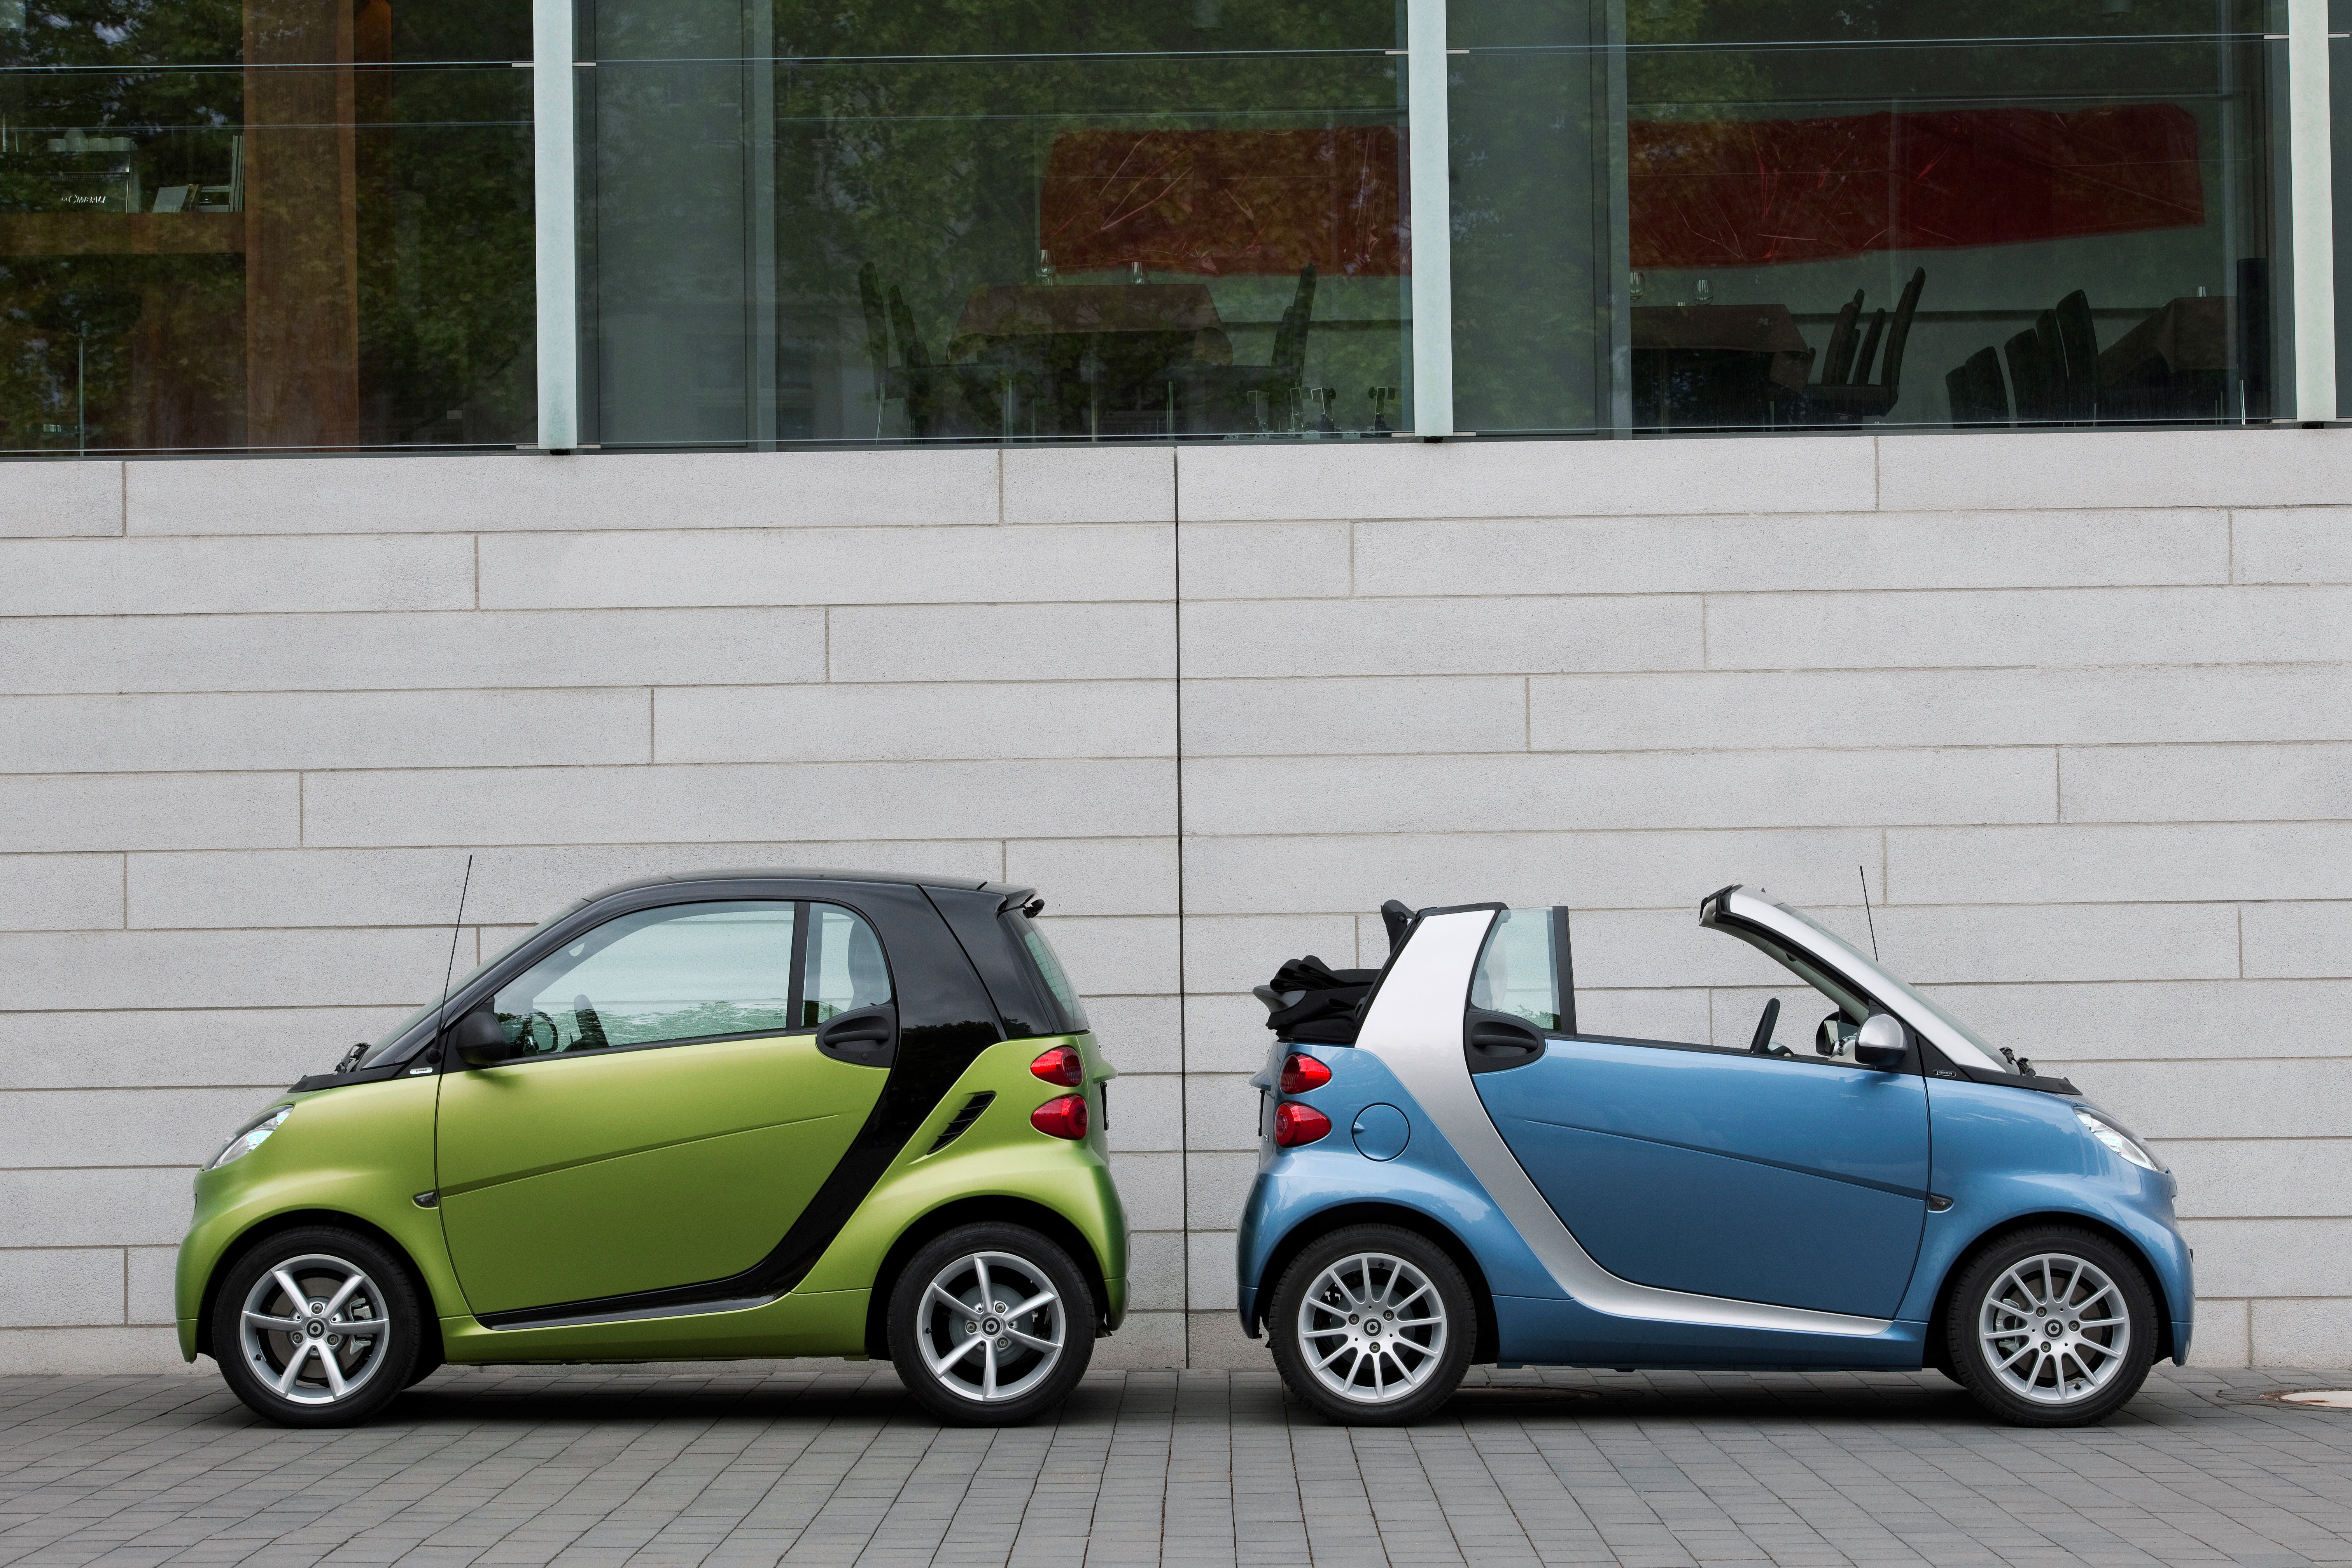 Smart car, Smart car: Future classic or dumb idea?, ClassicCars.com Journal